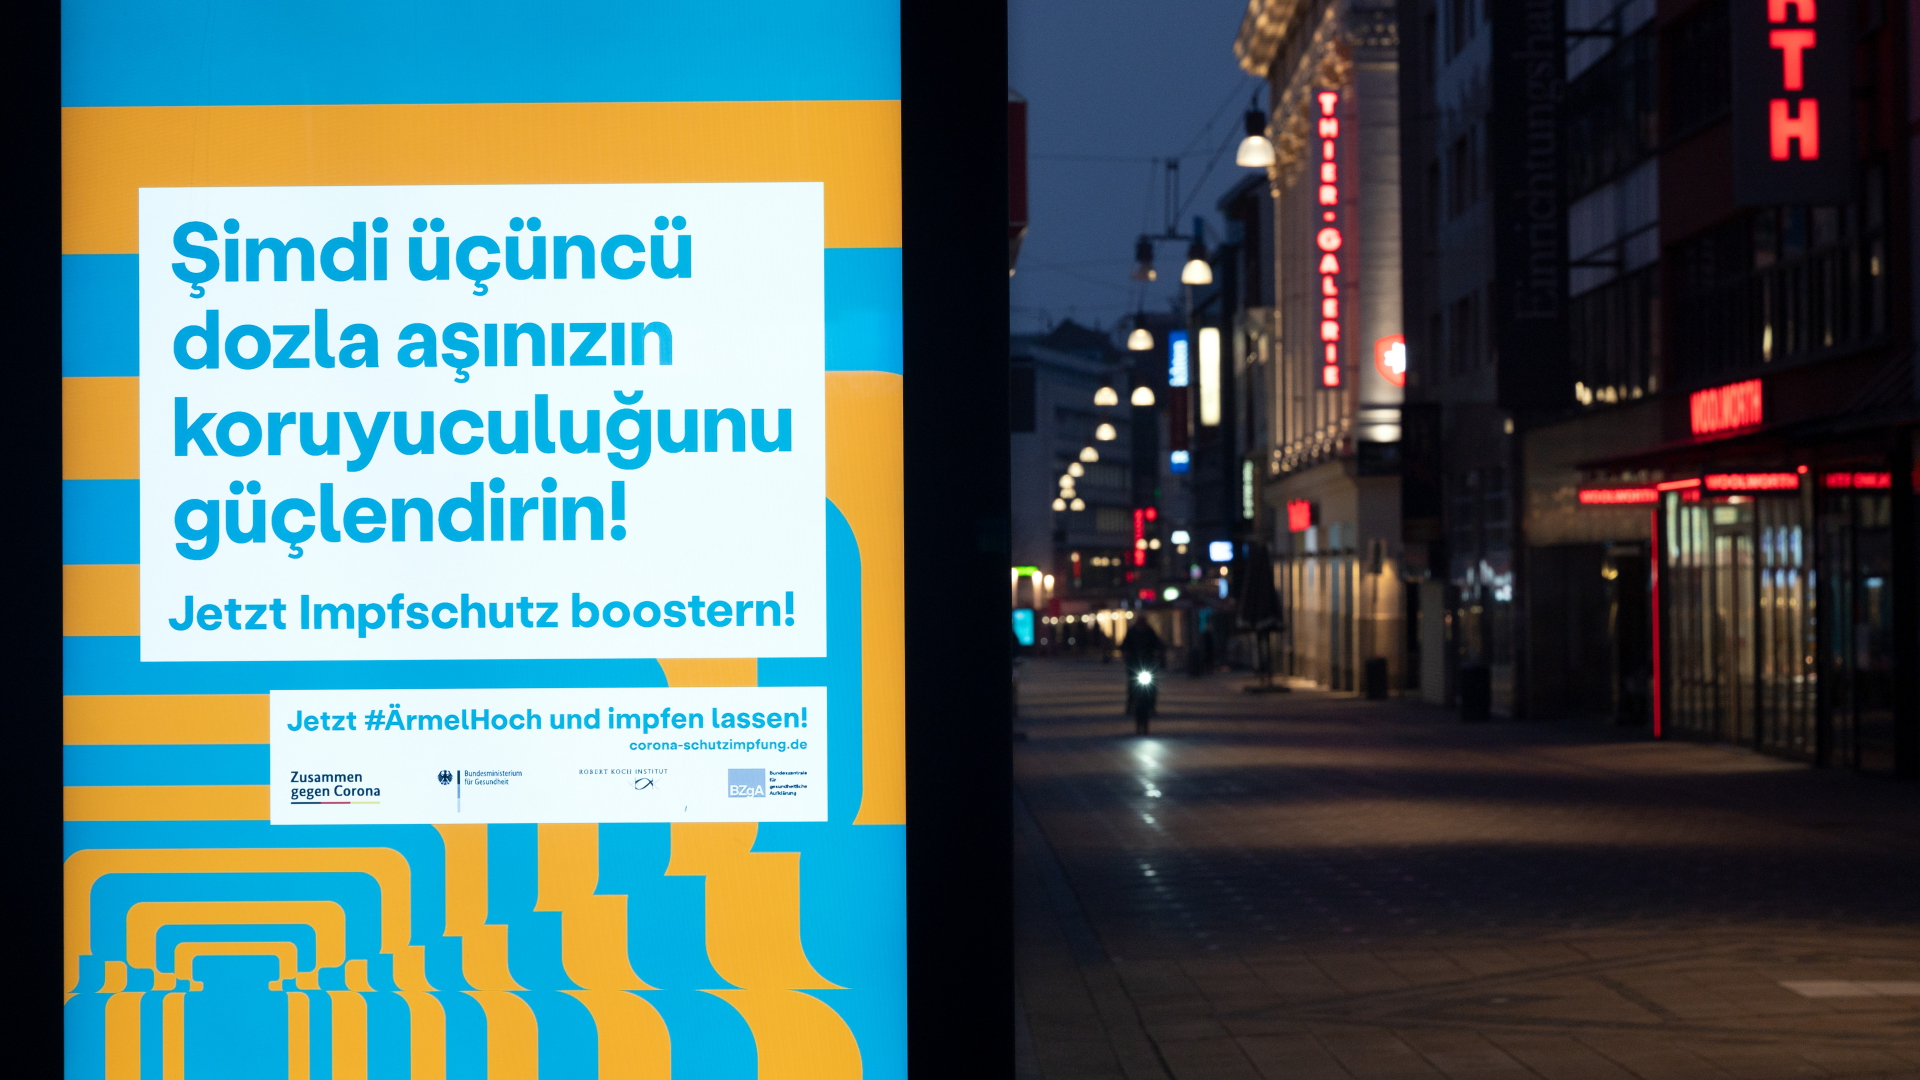 "Jetzt Impfschutz boostern!" ist auch in türkischer Sprache auf einem Werbedisplay in einer Fußgängerzone zu lesen. | dpa